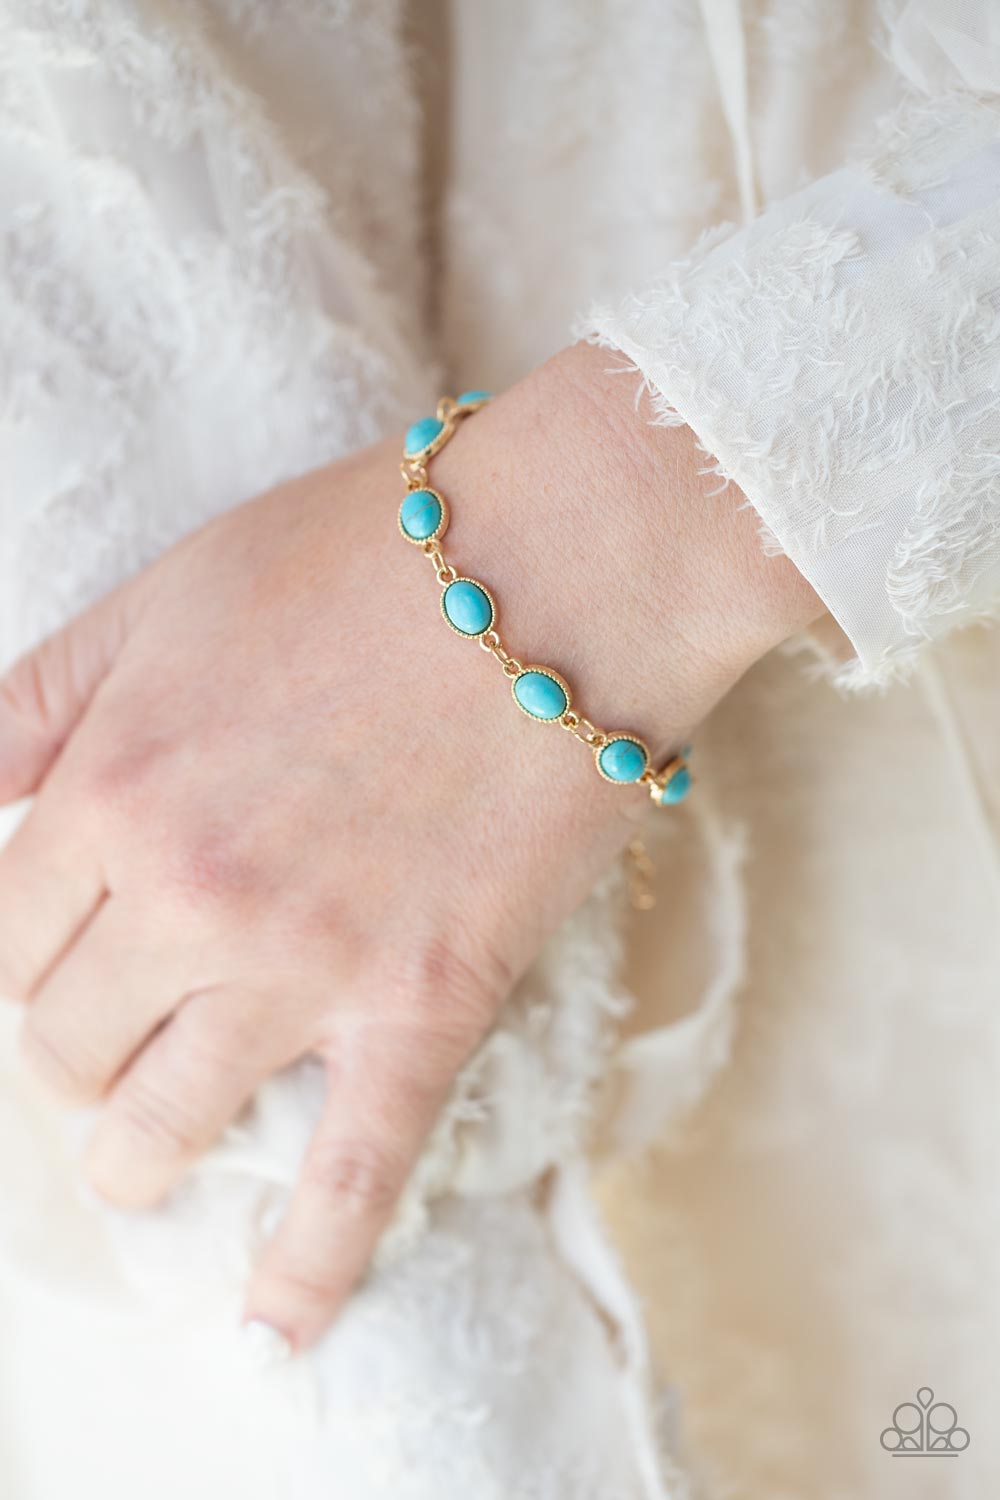 Paparazzi Desert Day Trip - Blue - Bracelet - $5 Jewelry with Ashley Swint